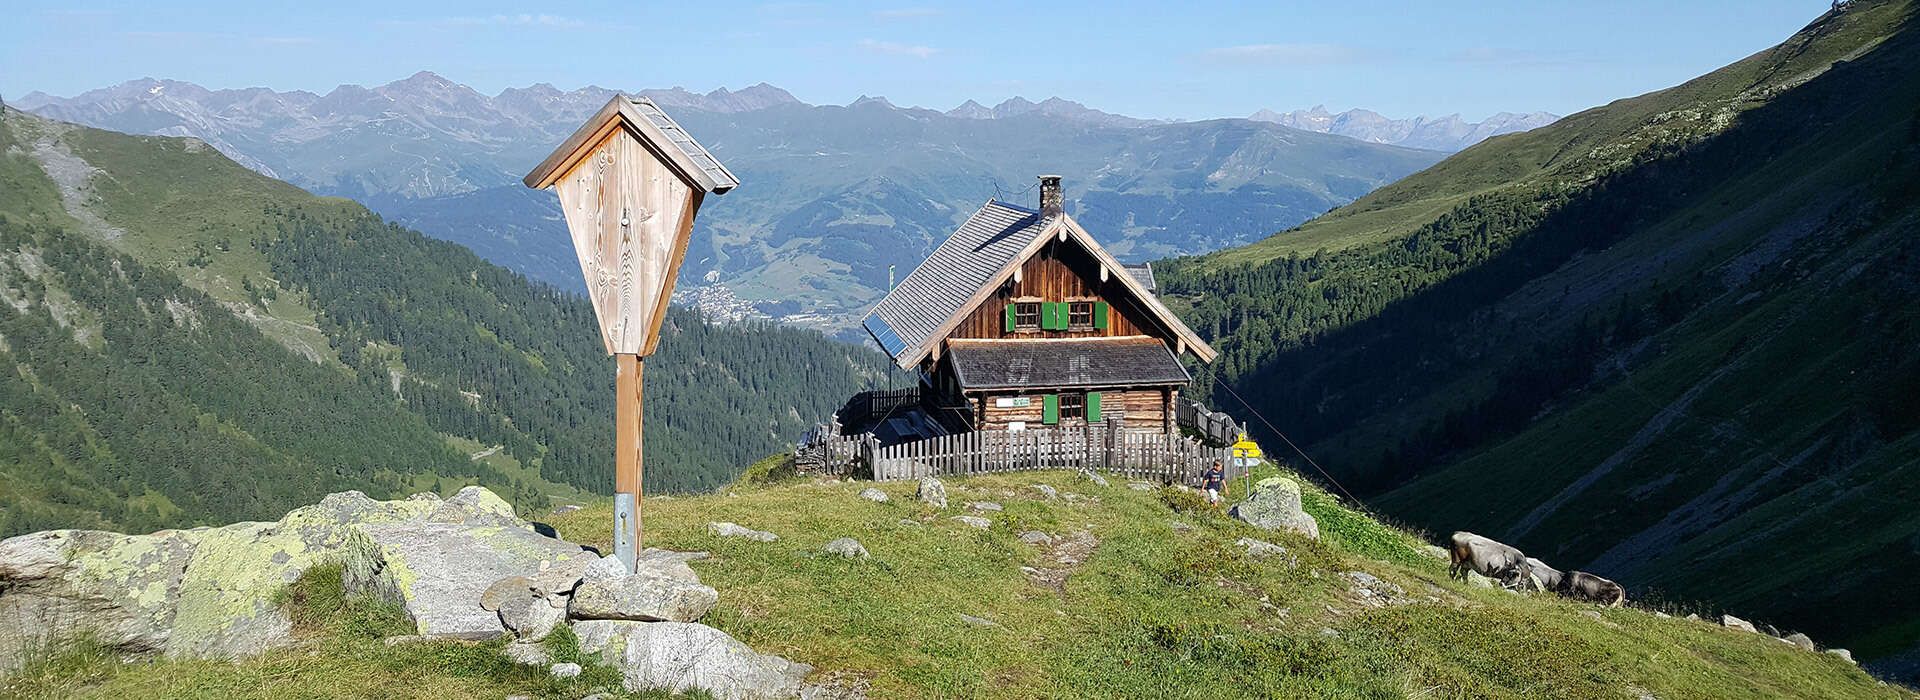 Mountain range with alpine hut in Kaunertal